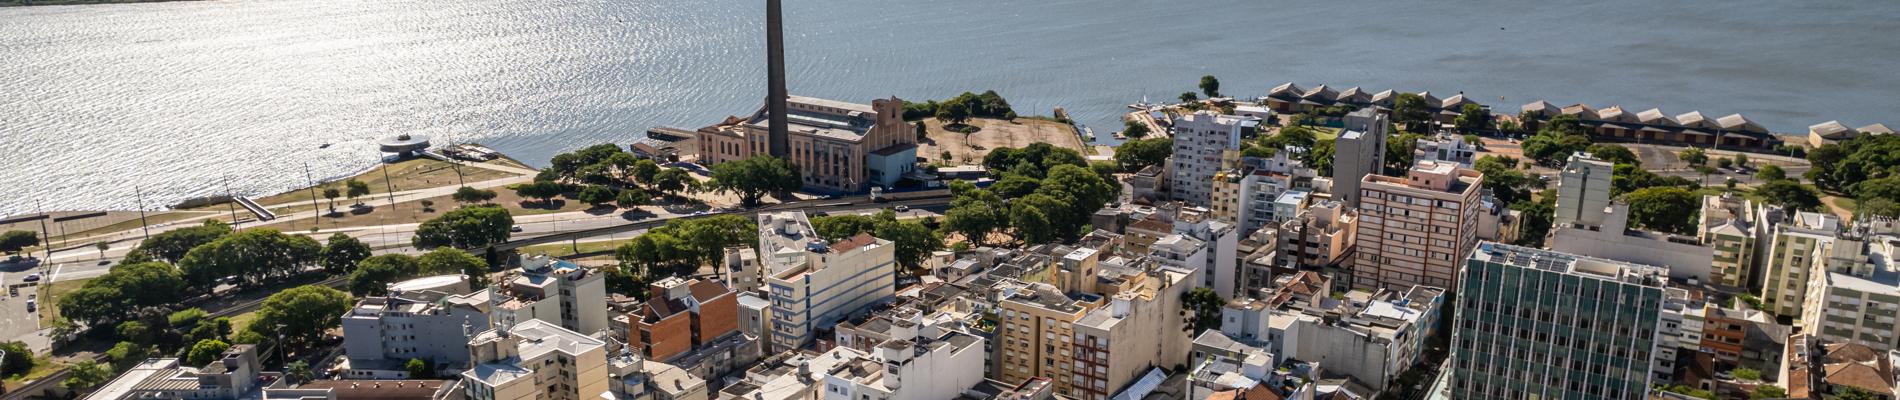 Cidade de Porto Alegre vista de cima.